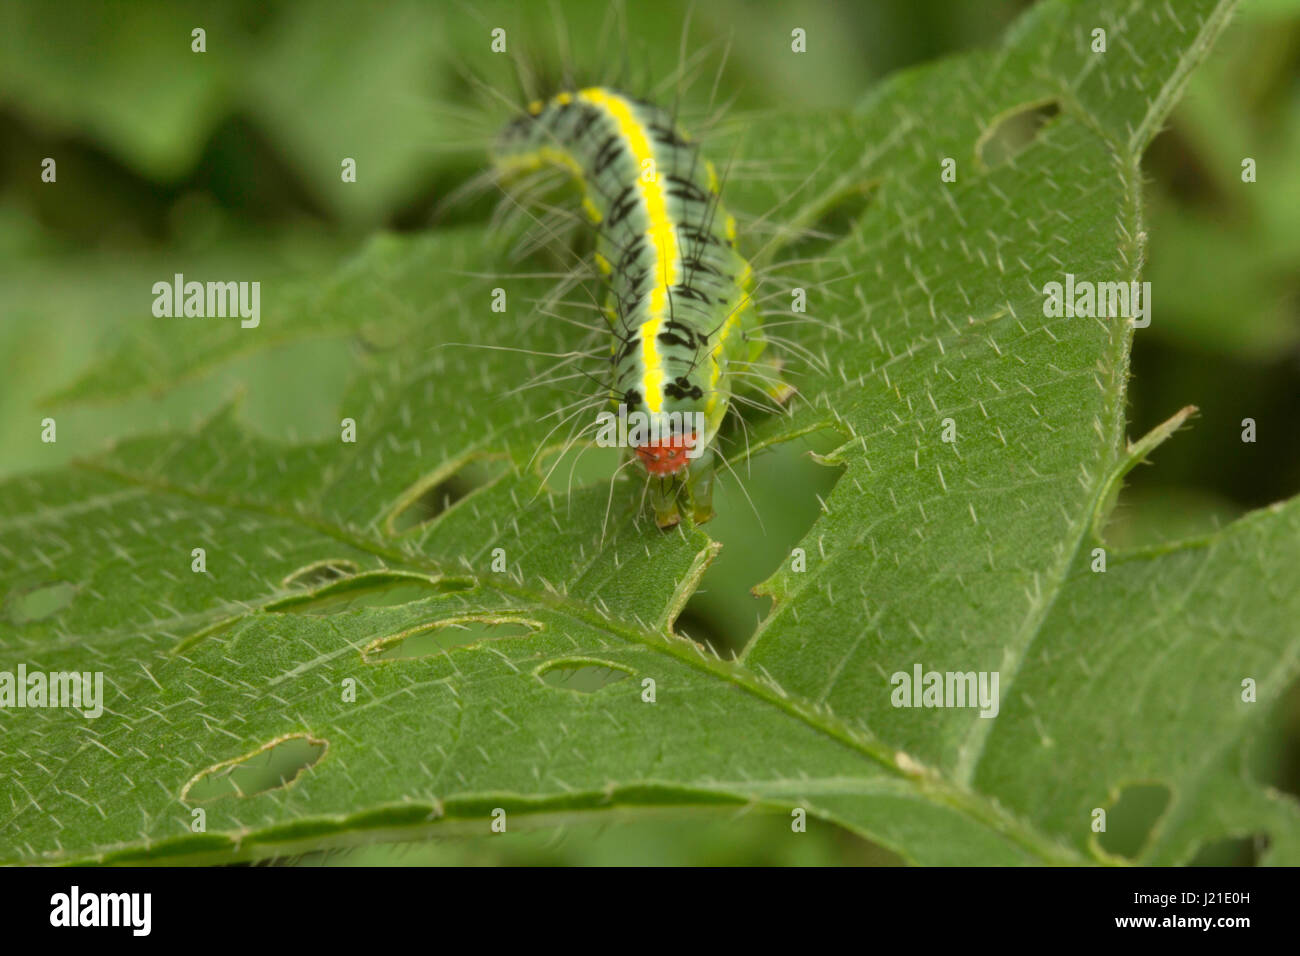 Moth caterpillar , Aarey colonia di latte , India. Presenza di capelli lunghi-come ,setole spinoso chiamato 'setae' è una delle strategie di difesa si vede in famil Foto Stock